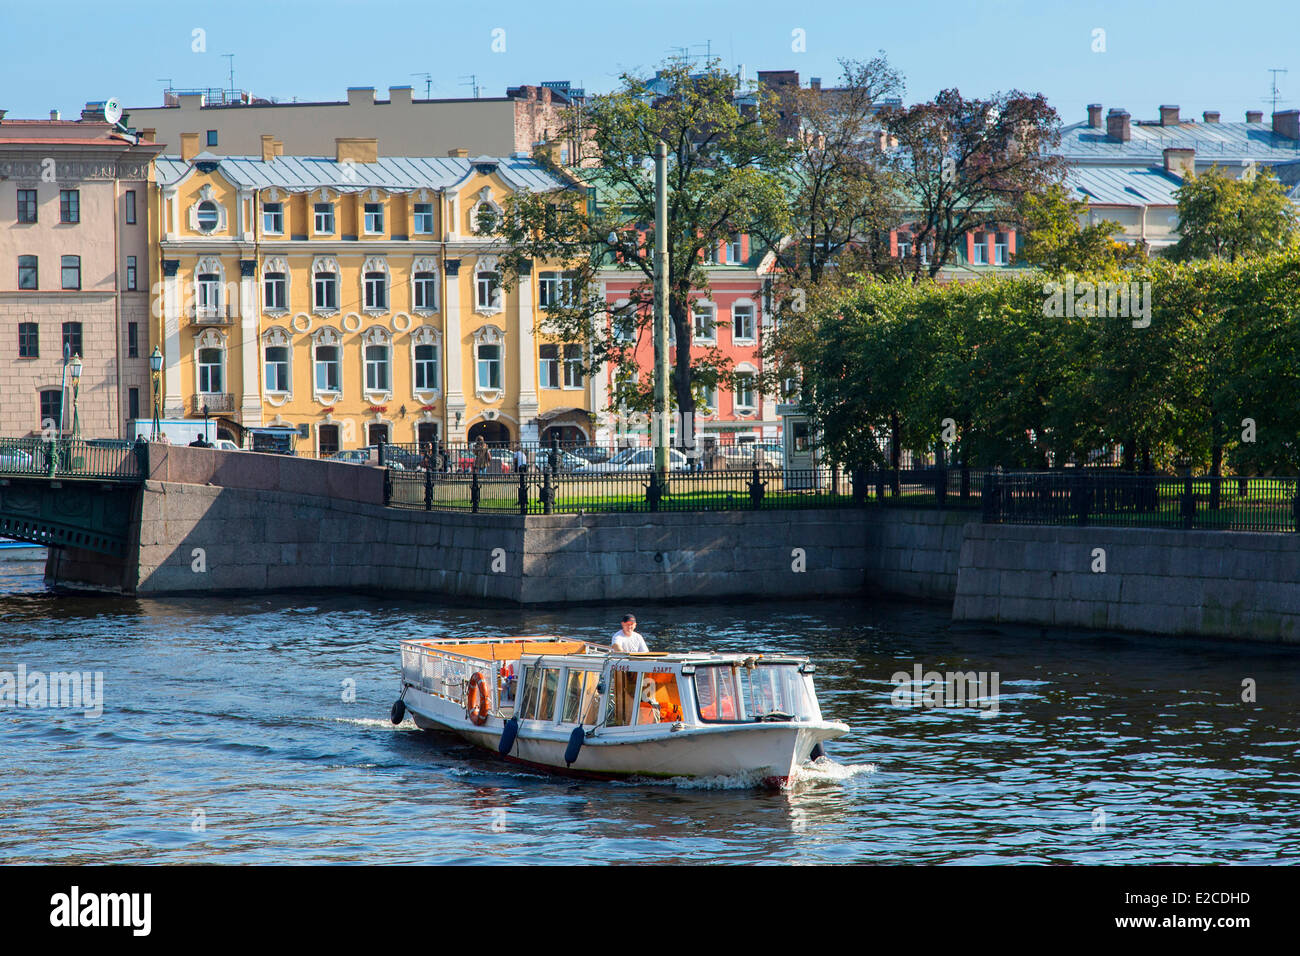 La Russia, San Pietroburgo, elencato come patrimonio mondiale dall' UNESCO, in barca nel canale Foto Stock